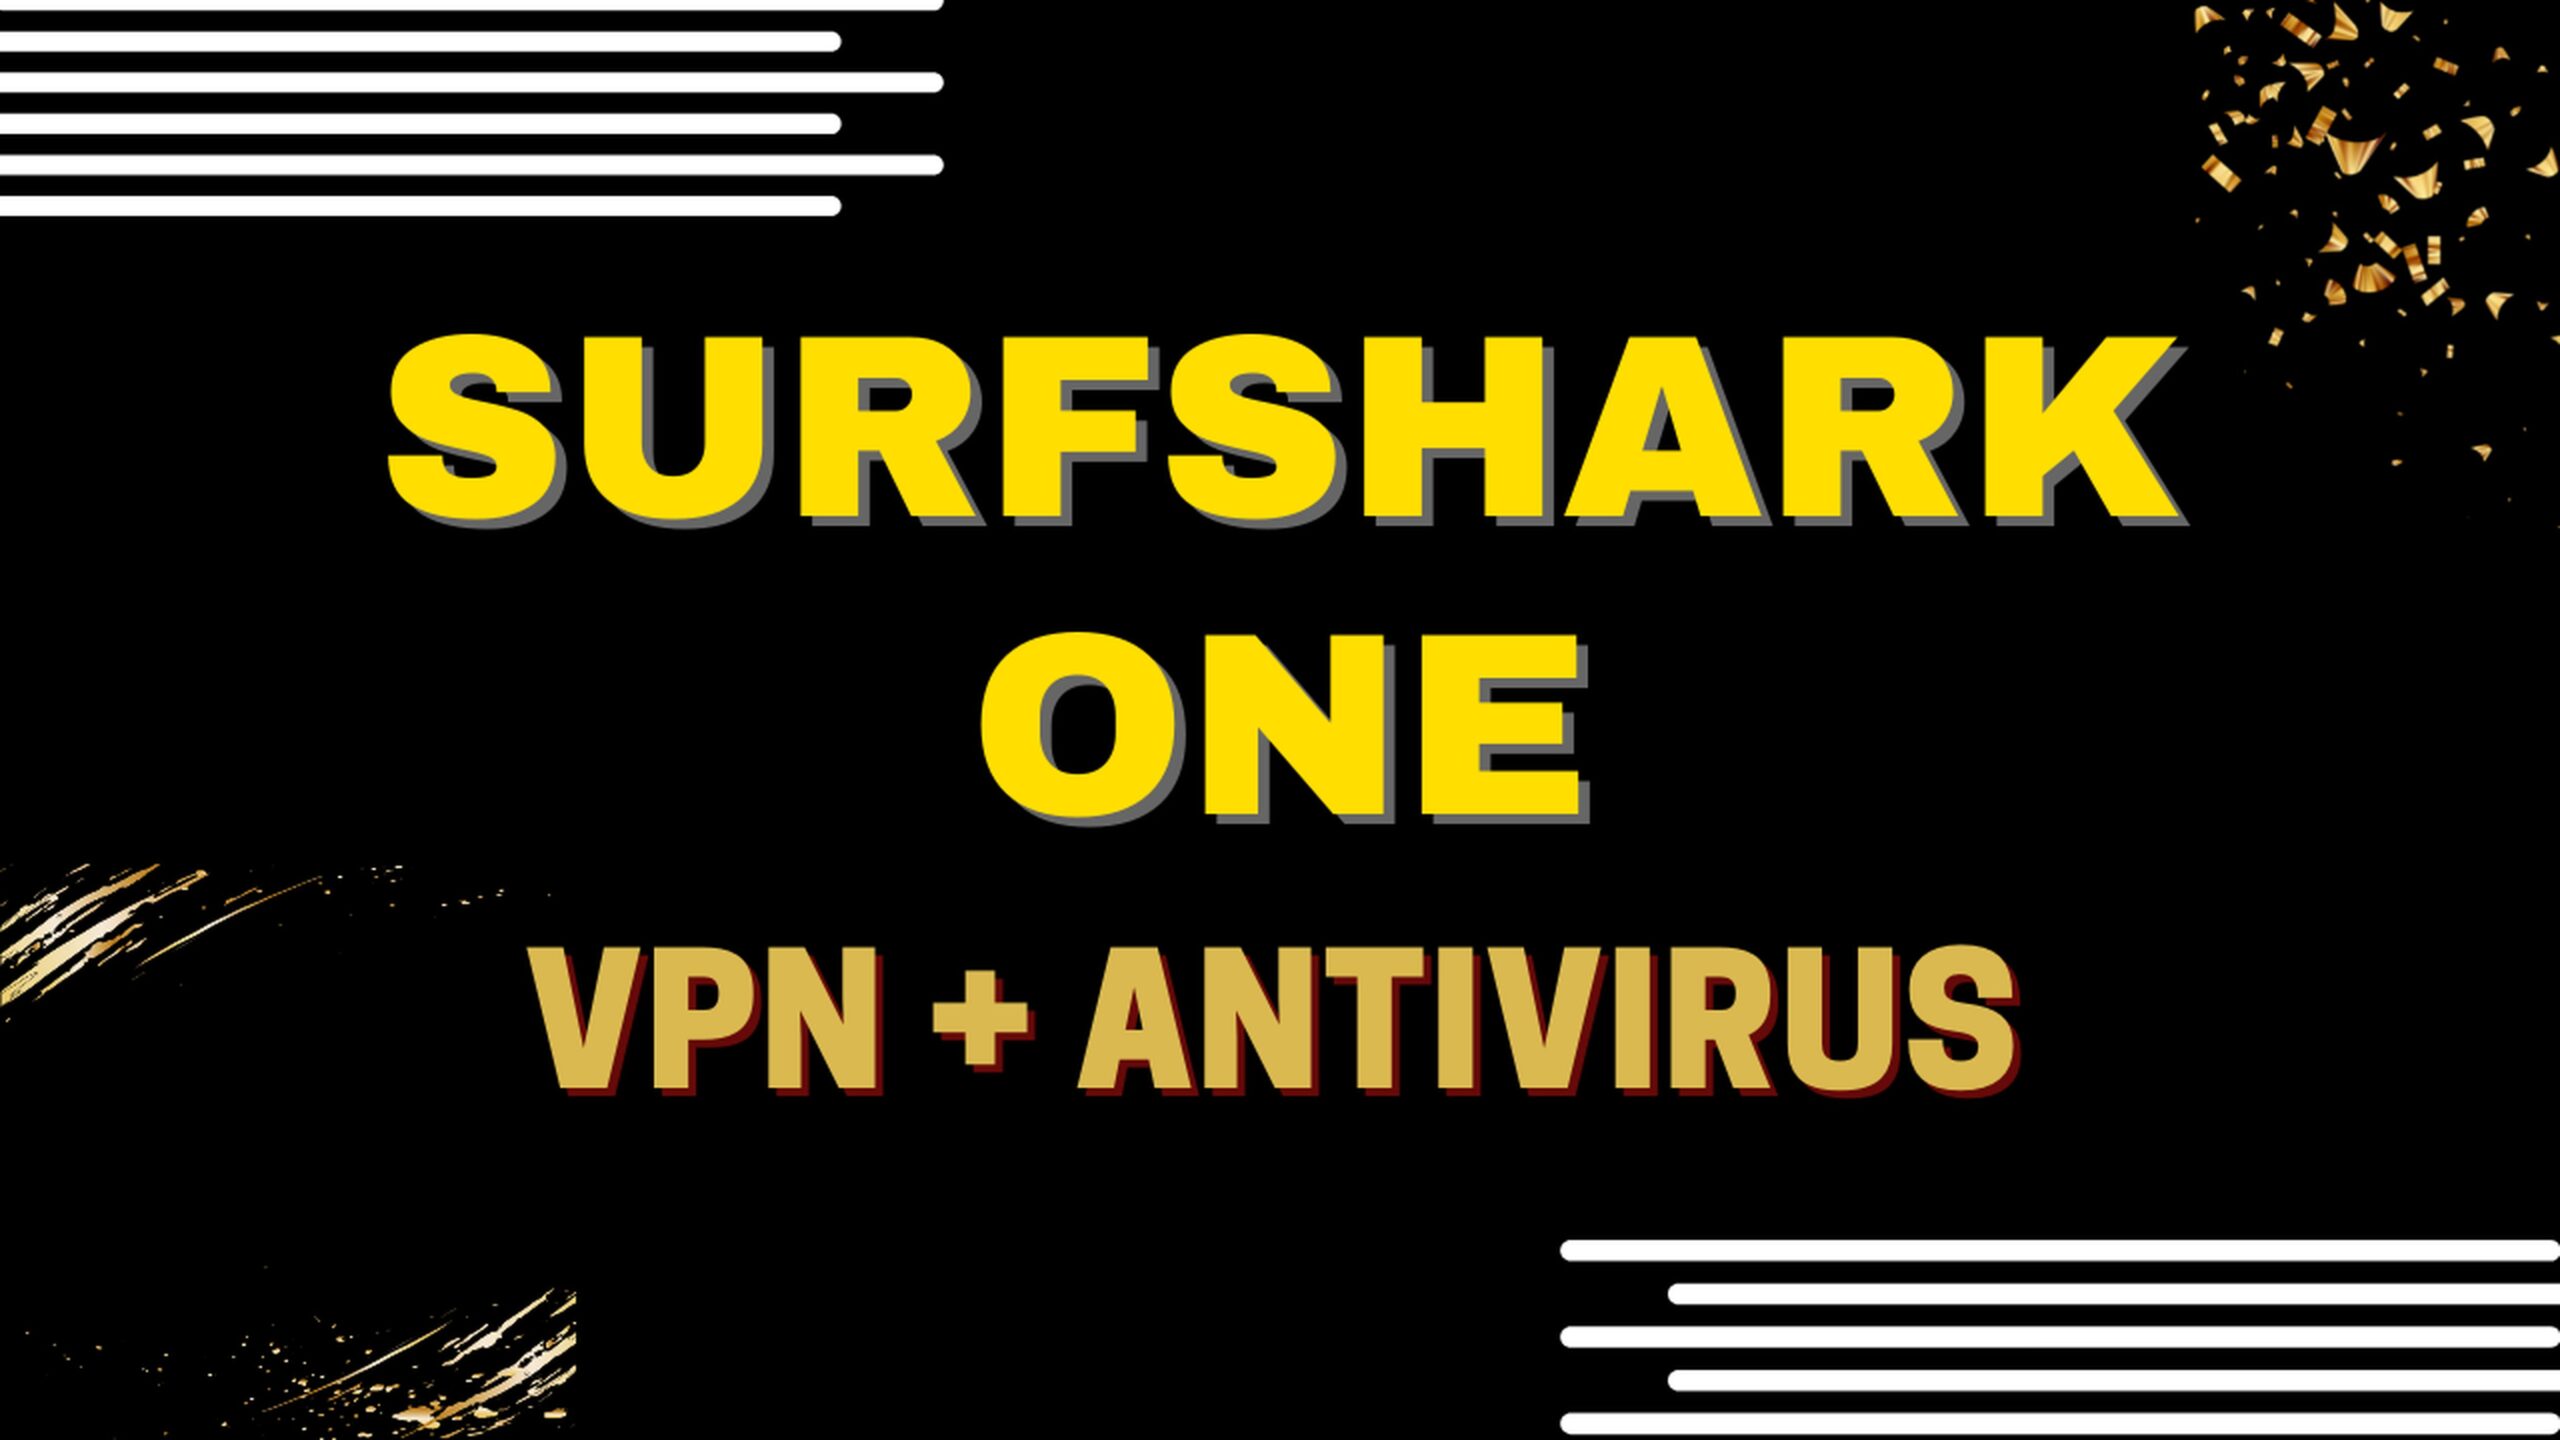 Surfshark One, une offre tout-en-un : VPN + Antivirus 7